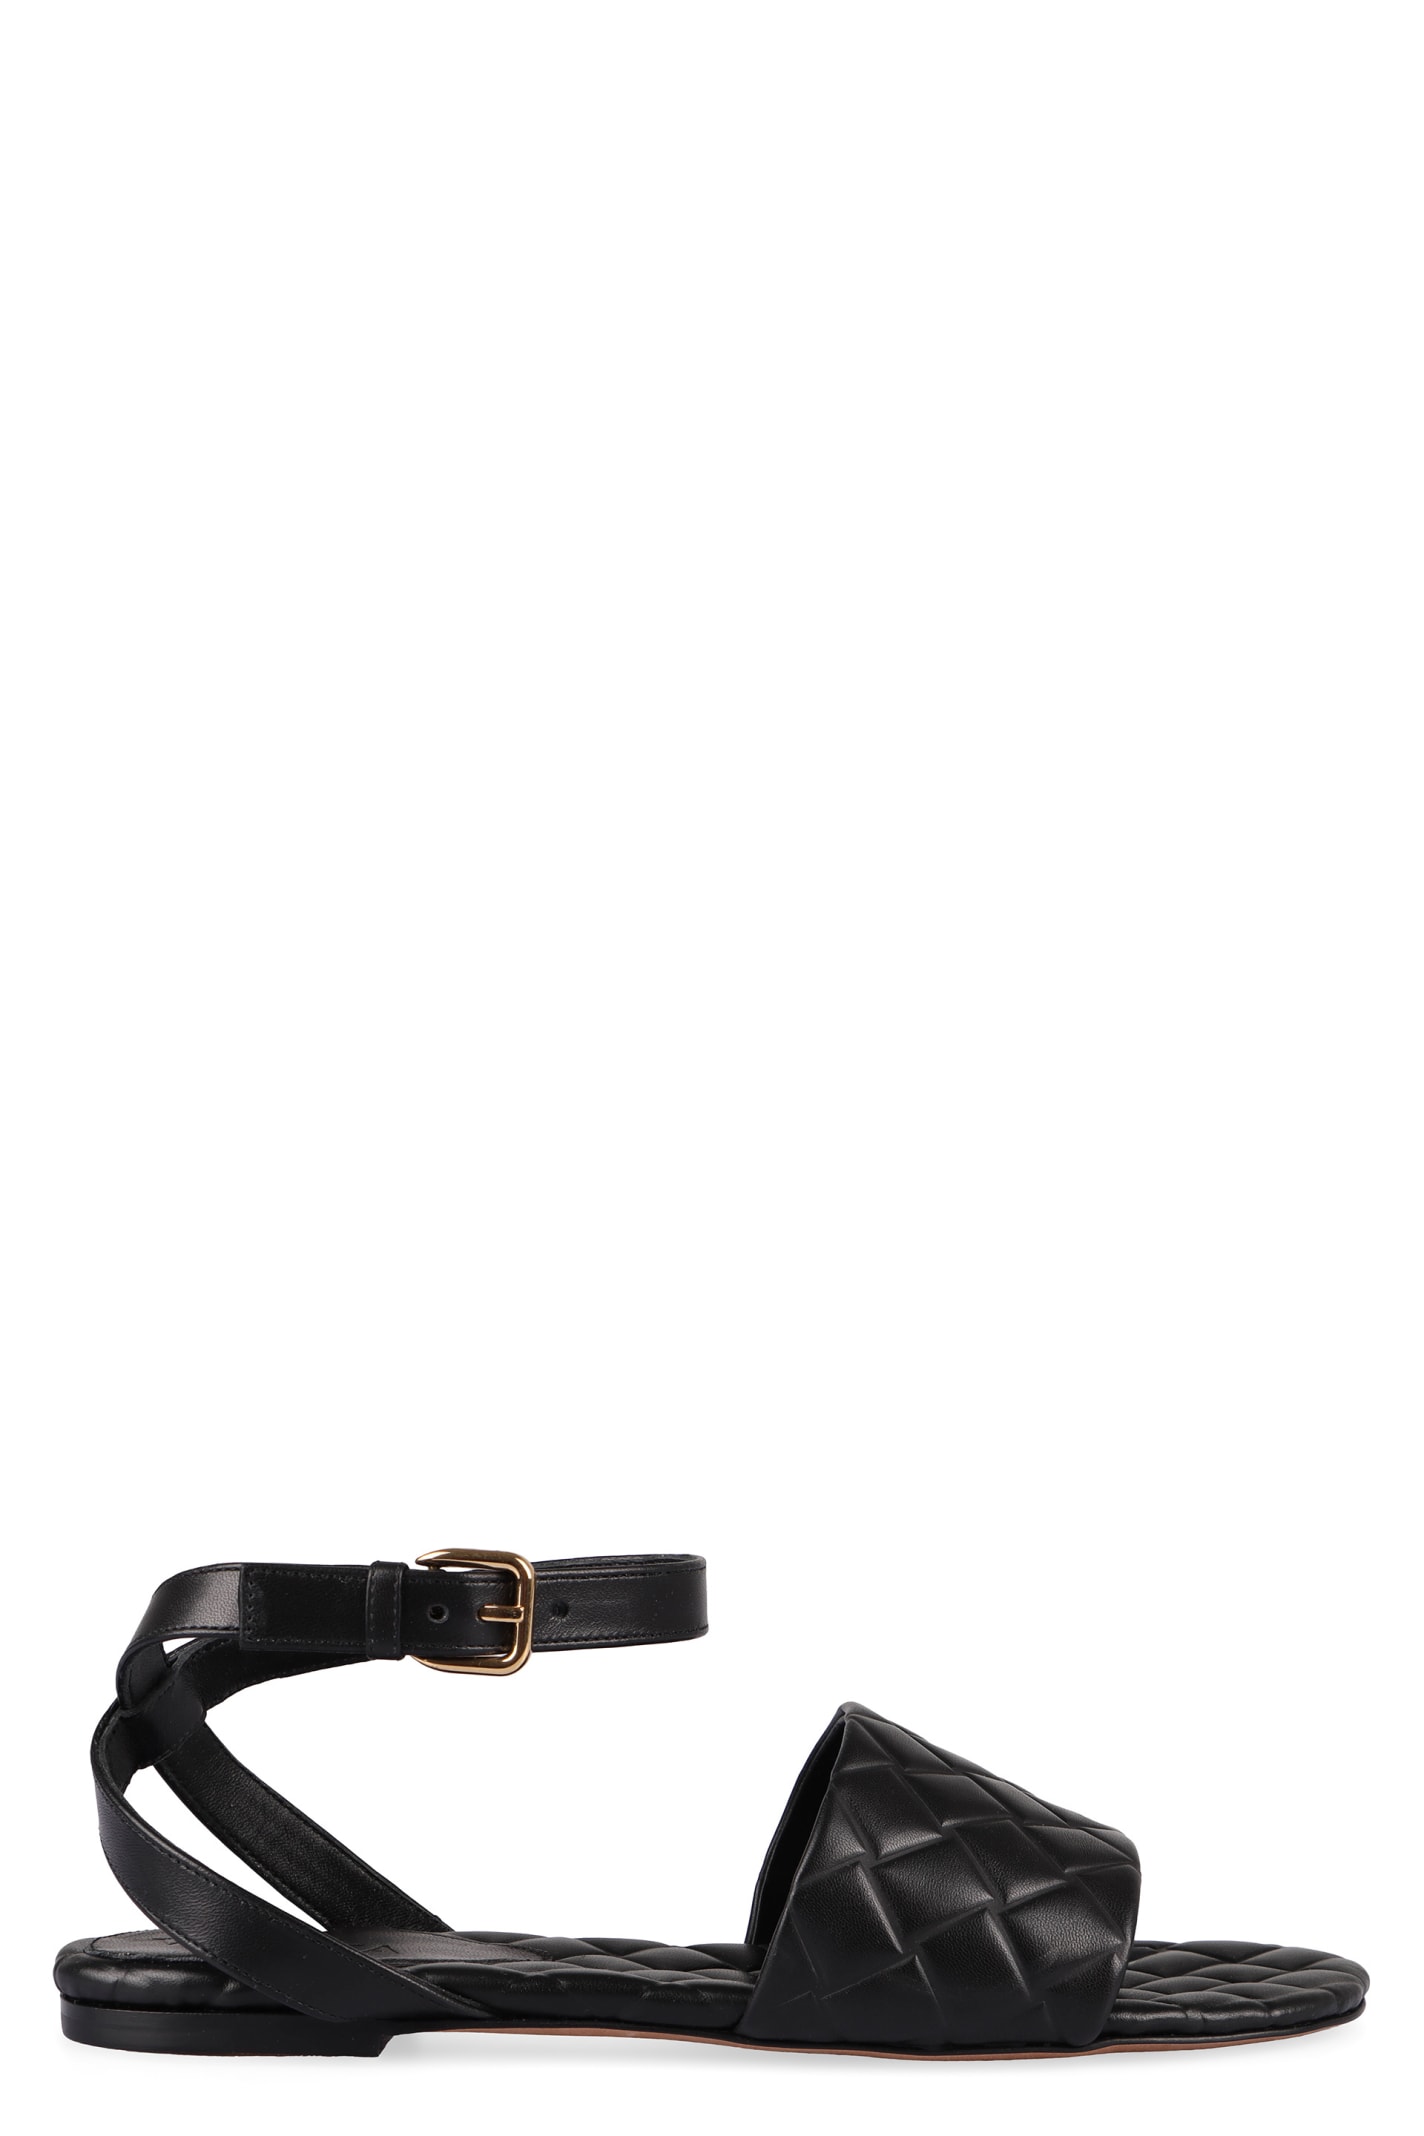 Shop Bottega Veneta Amy Flat Sandals In Black